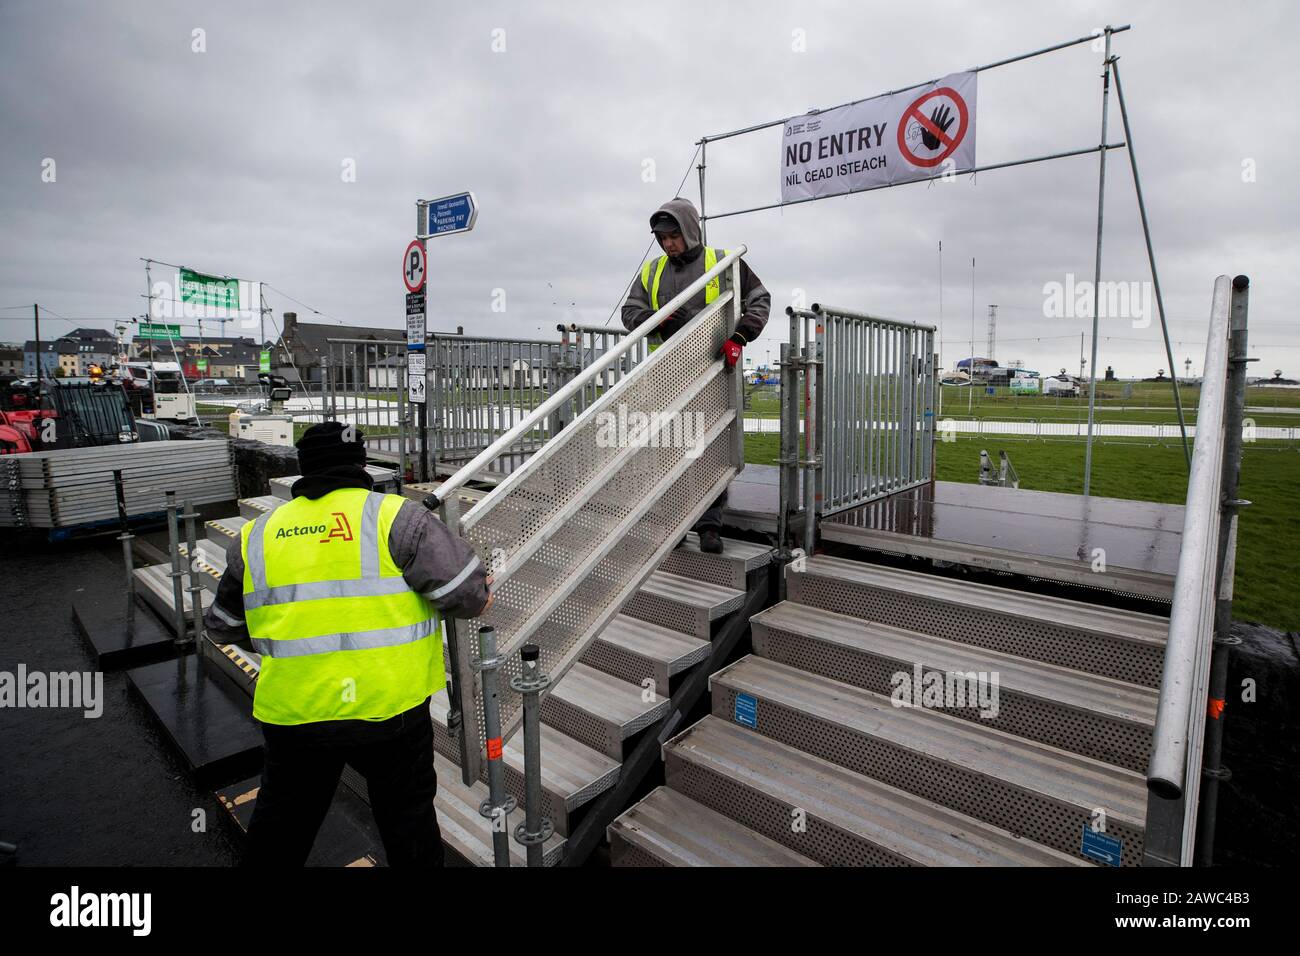 Die Bauarbeiter beginnen den Prozess der Demontage im Südpark von Galway, nachdem die Organisatoren der Eröffnungsfeier zum Jahr Galways als Kulturhauptstadt Europas die Zeremonie aufgrund des schlechten Wetters mit Storm Ciara abgesagt haben, das später am Samstag eintreffen soll. Stockfoto